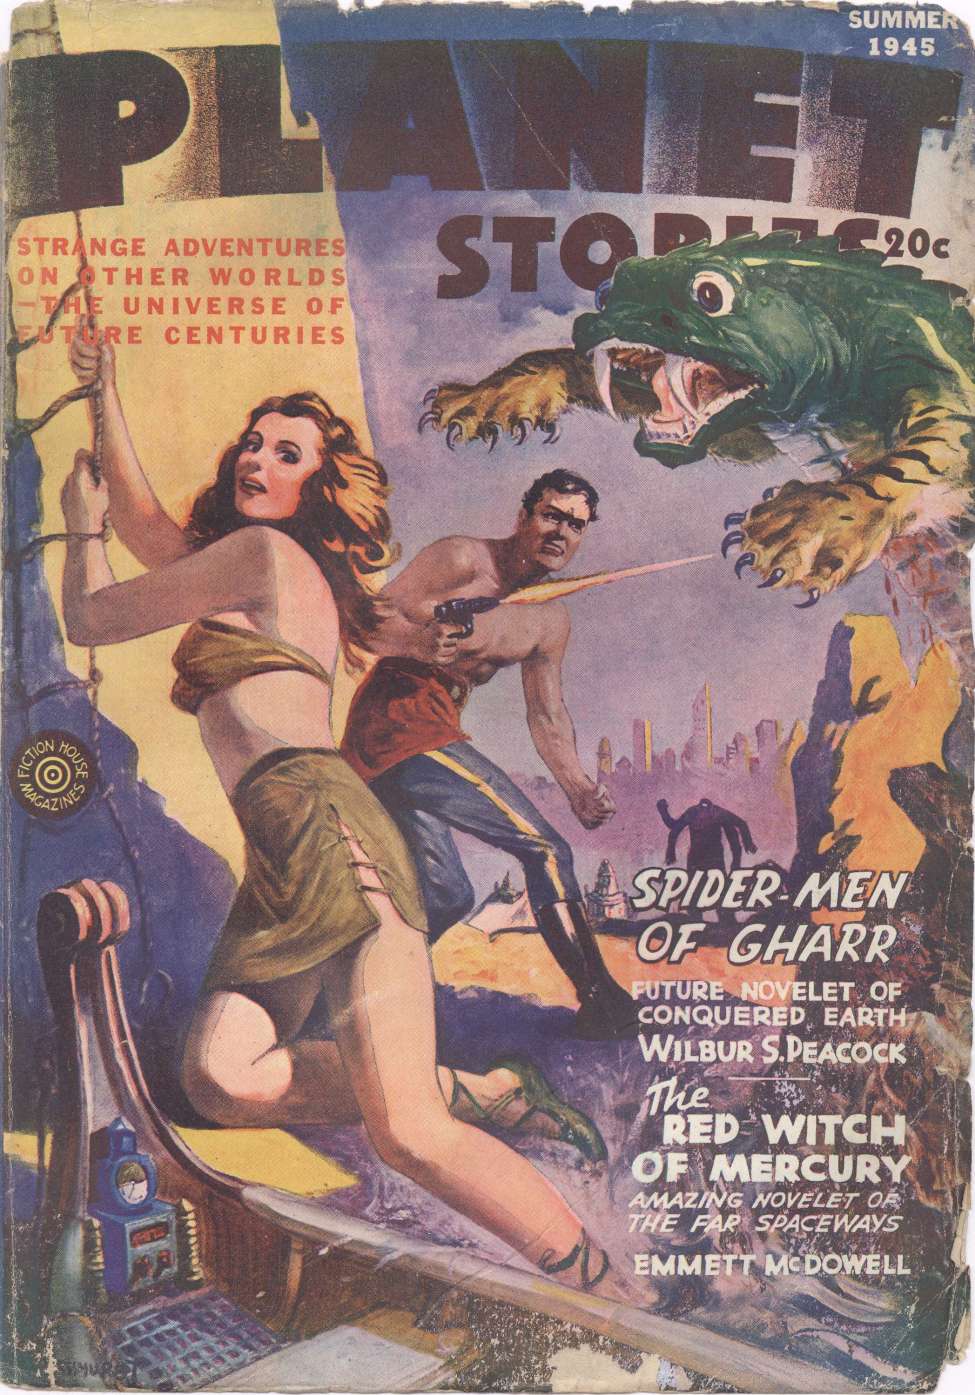 Comic Book Cover For Planet Stories v2 11 -Spider Men of Gharr - Wilbur S. Peacock